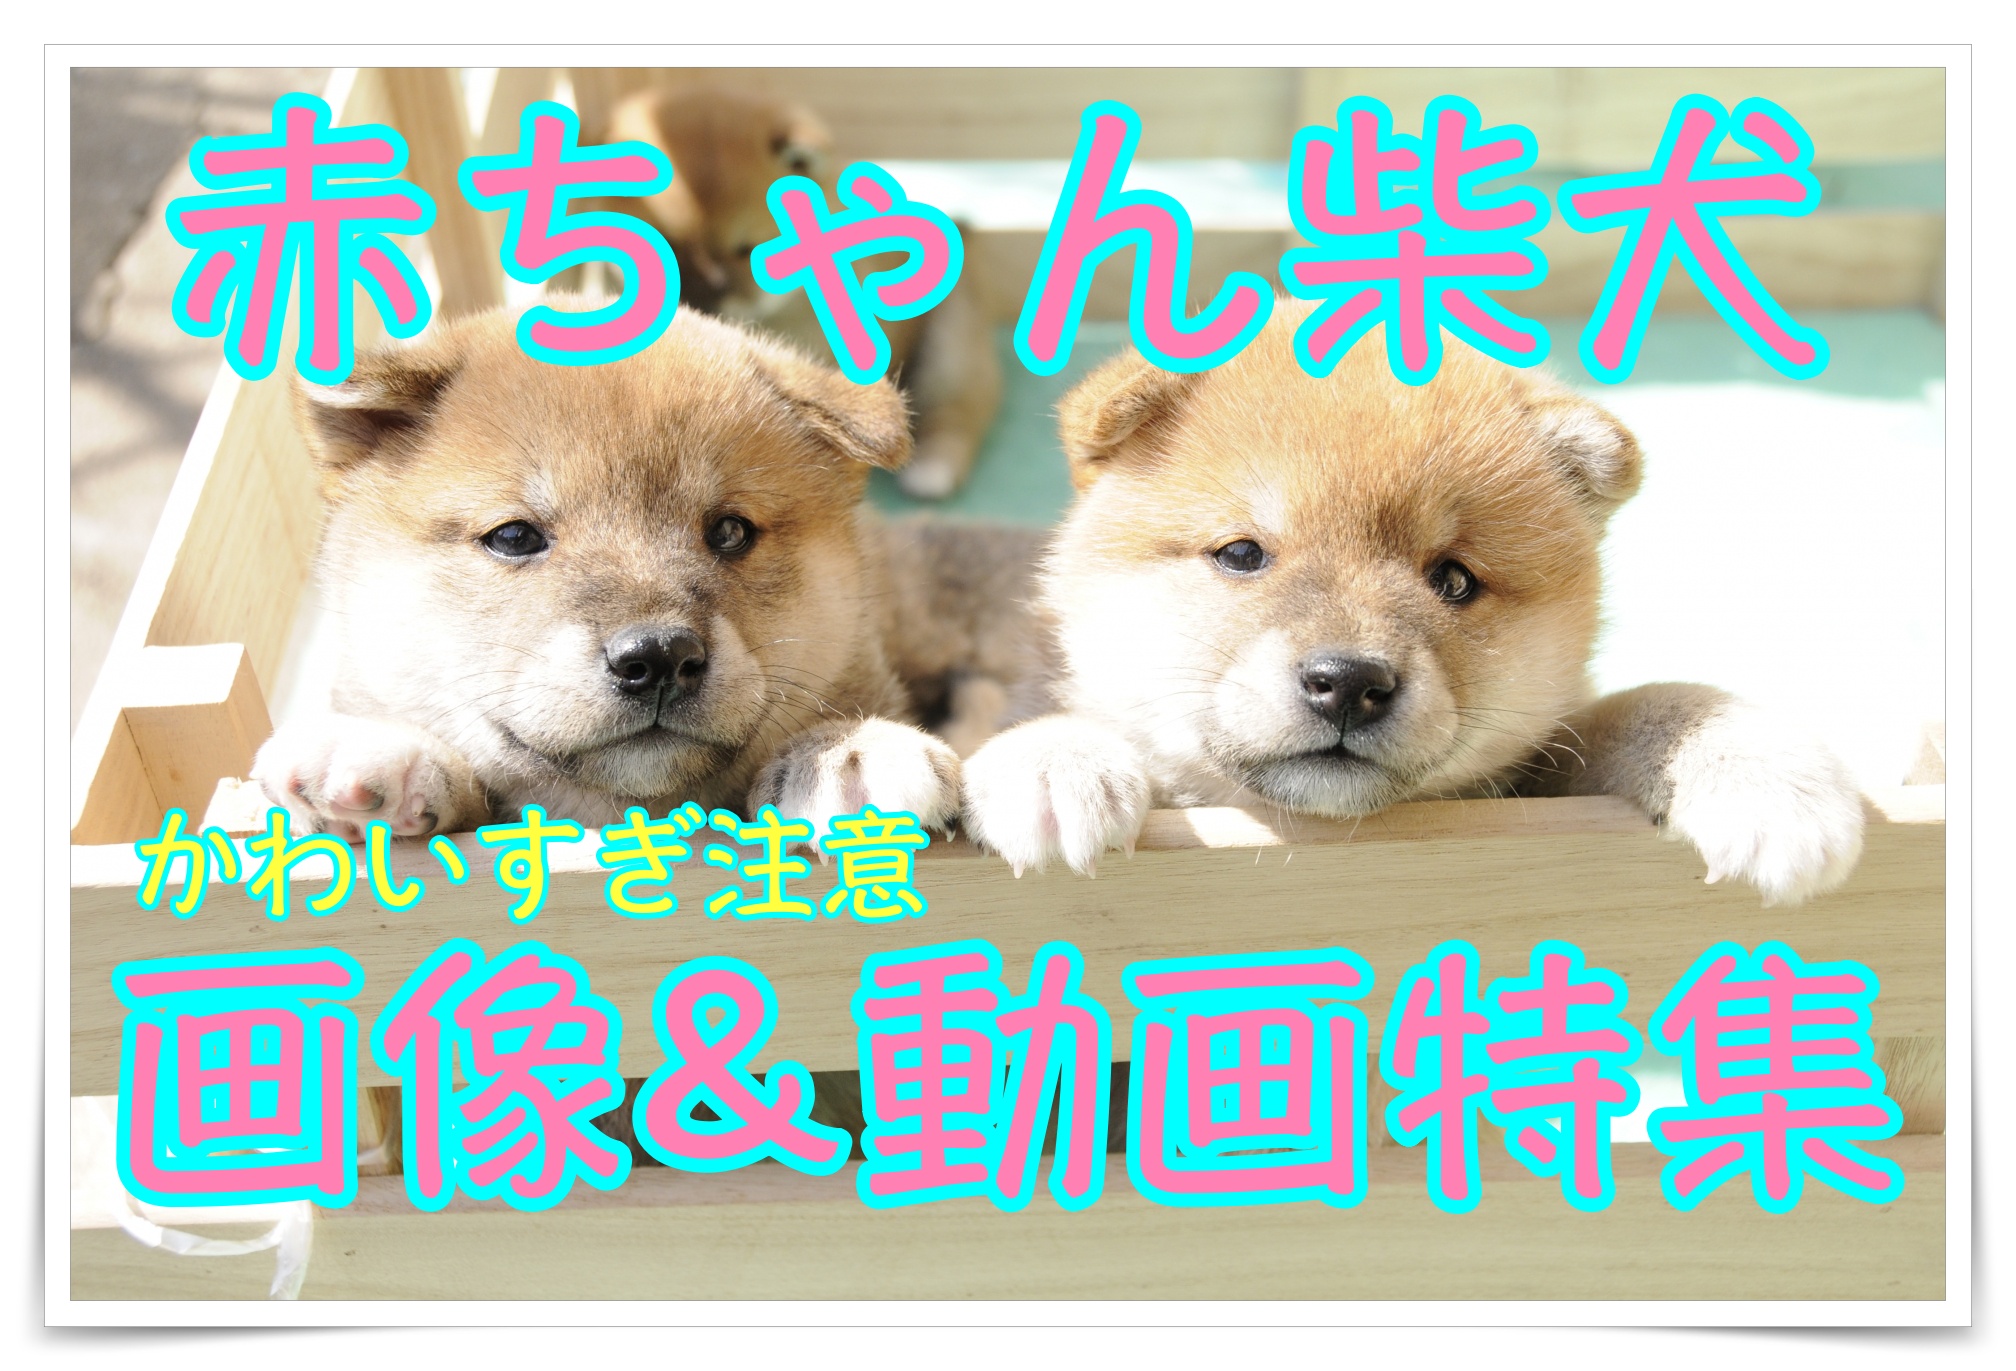 柴犬の赤ちゃんはとってもかわいい 癒し画像 癒し動画特集 Maccoの柴犬 Funブログ